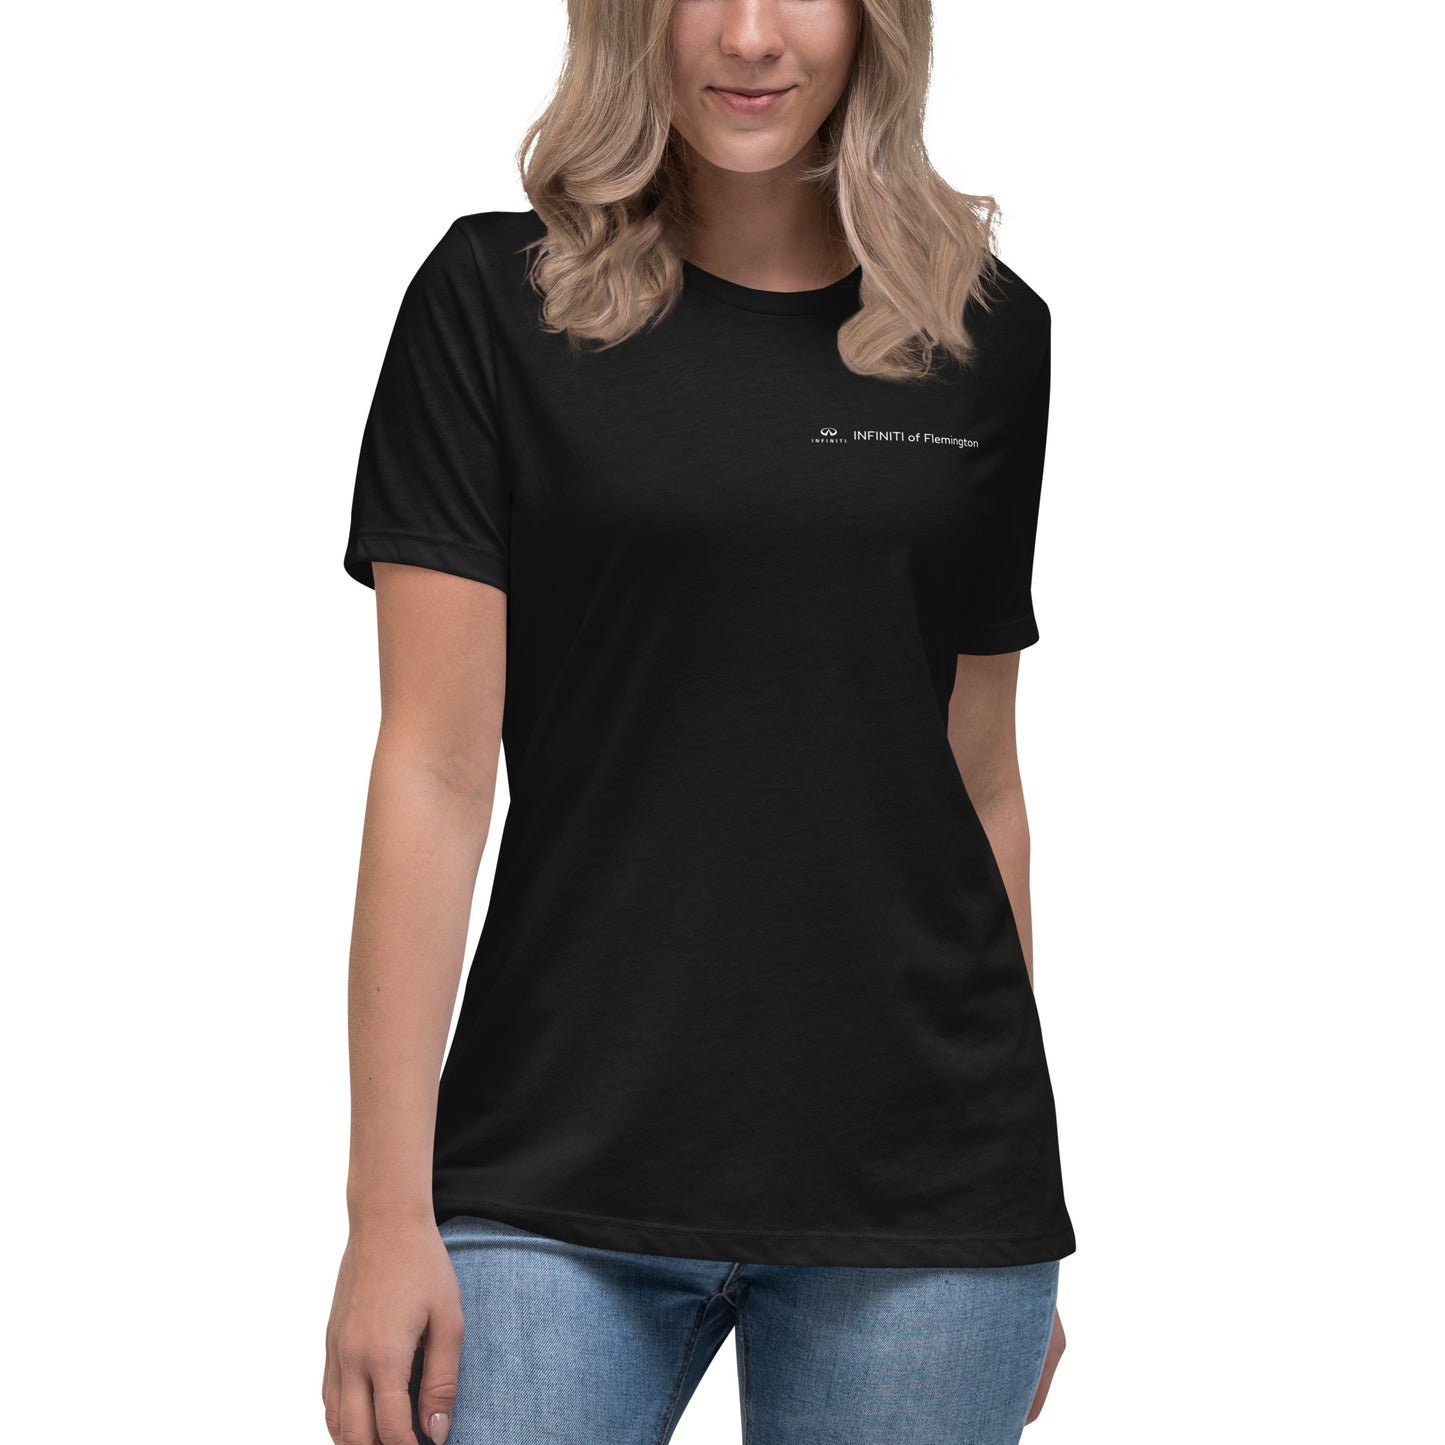 Women's Classic T-Shirt - INFINITI of Flemington